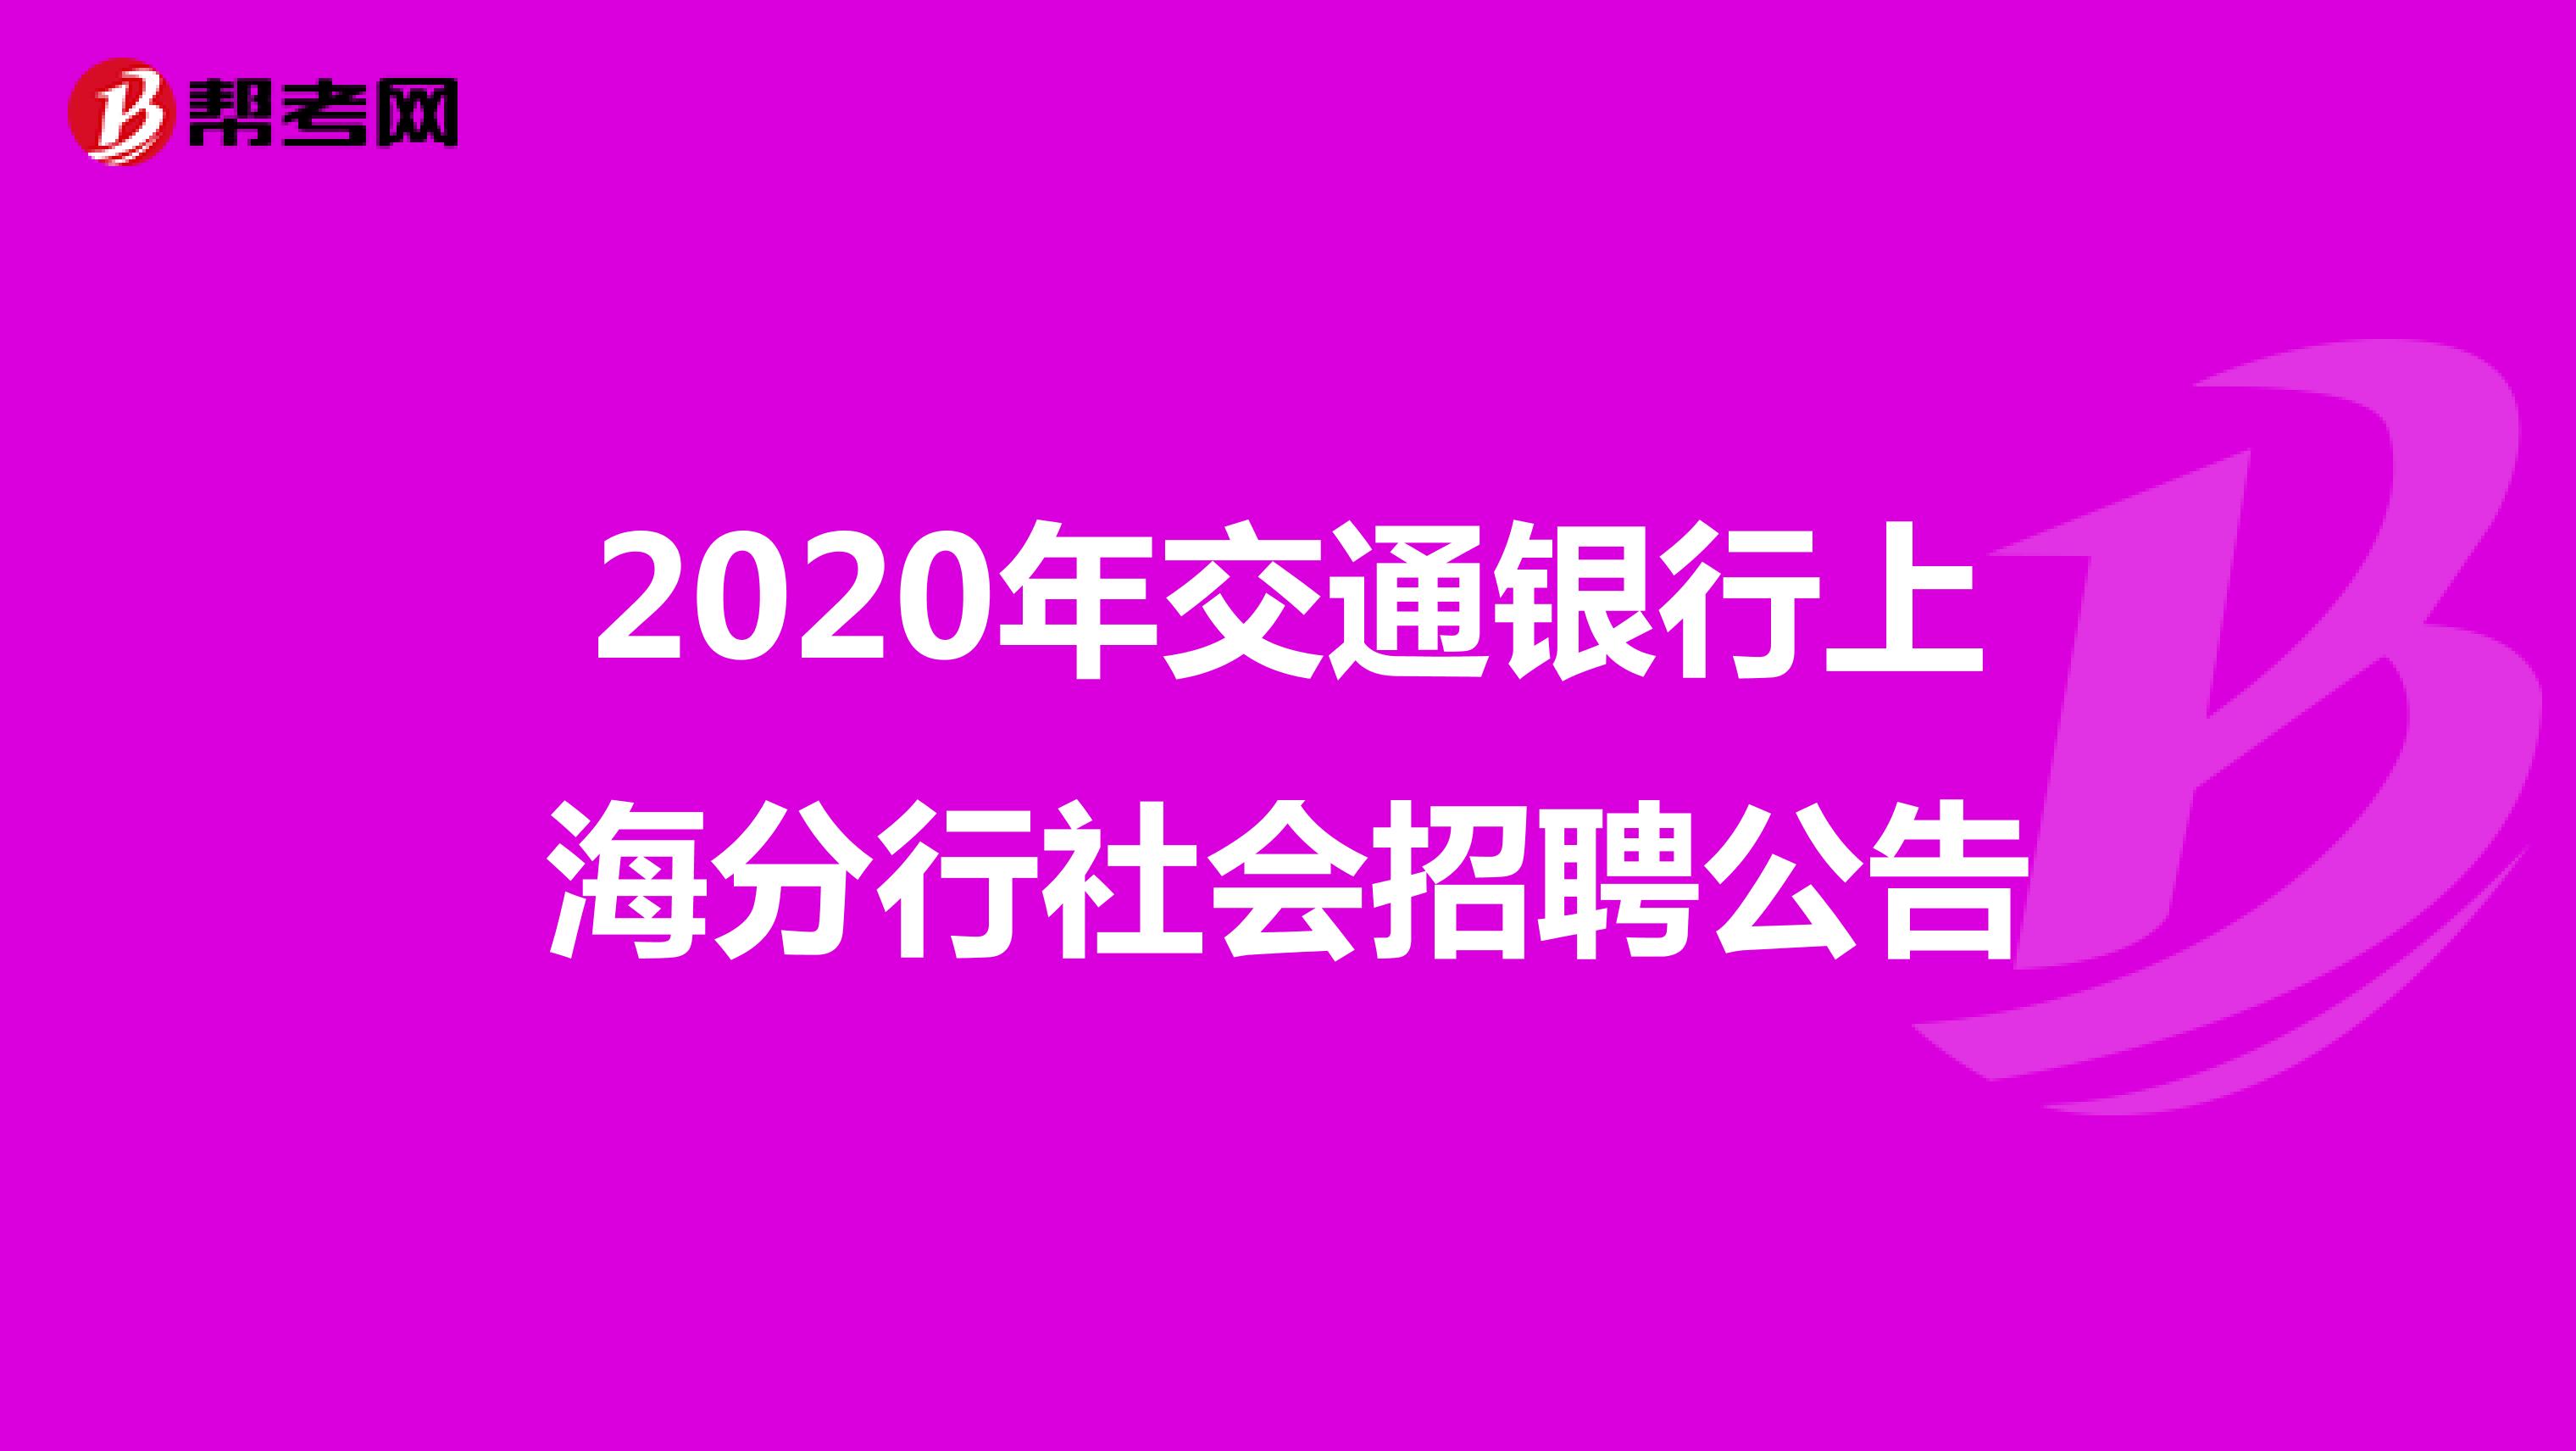 2020年交通银行上海分行社会招聘公告